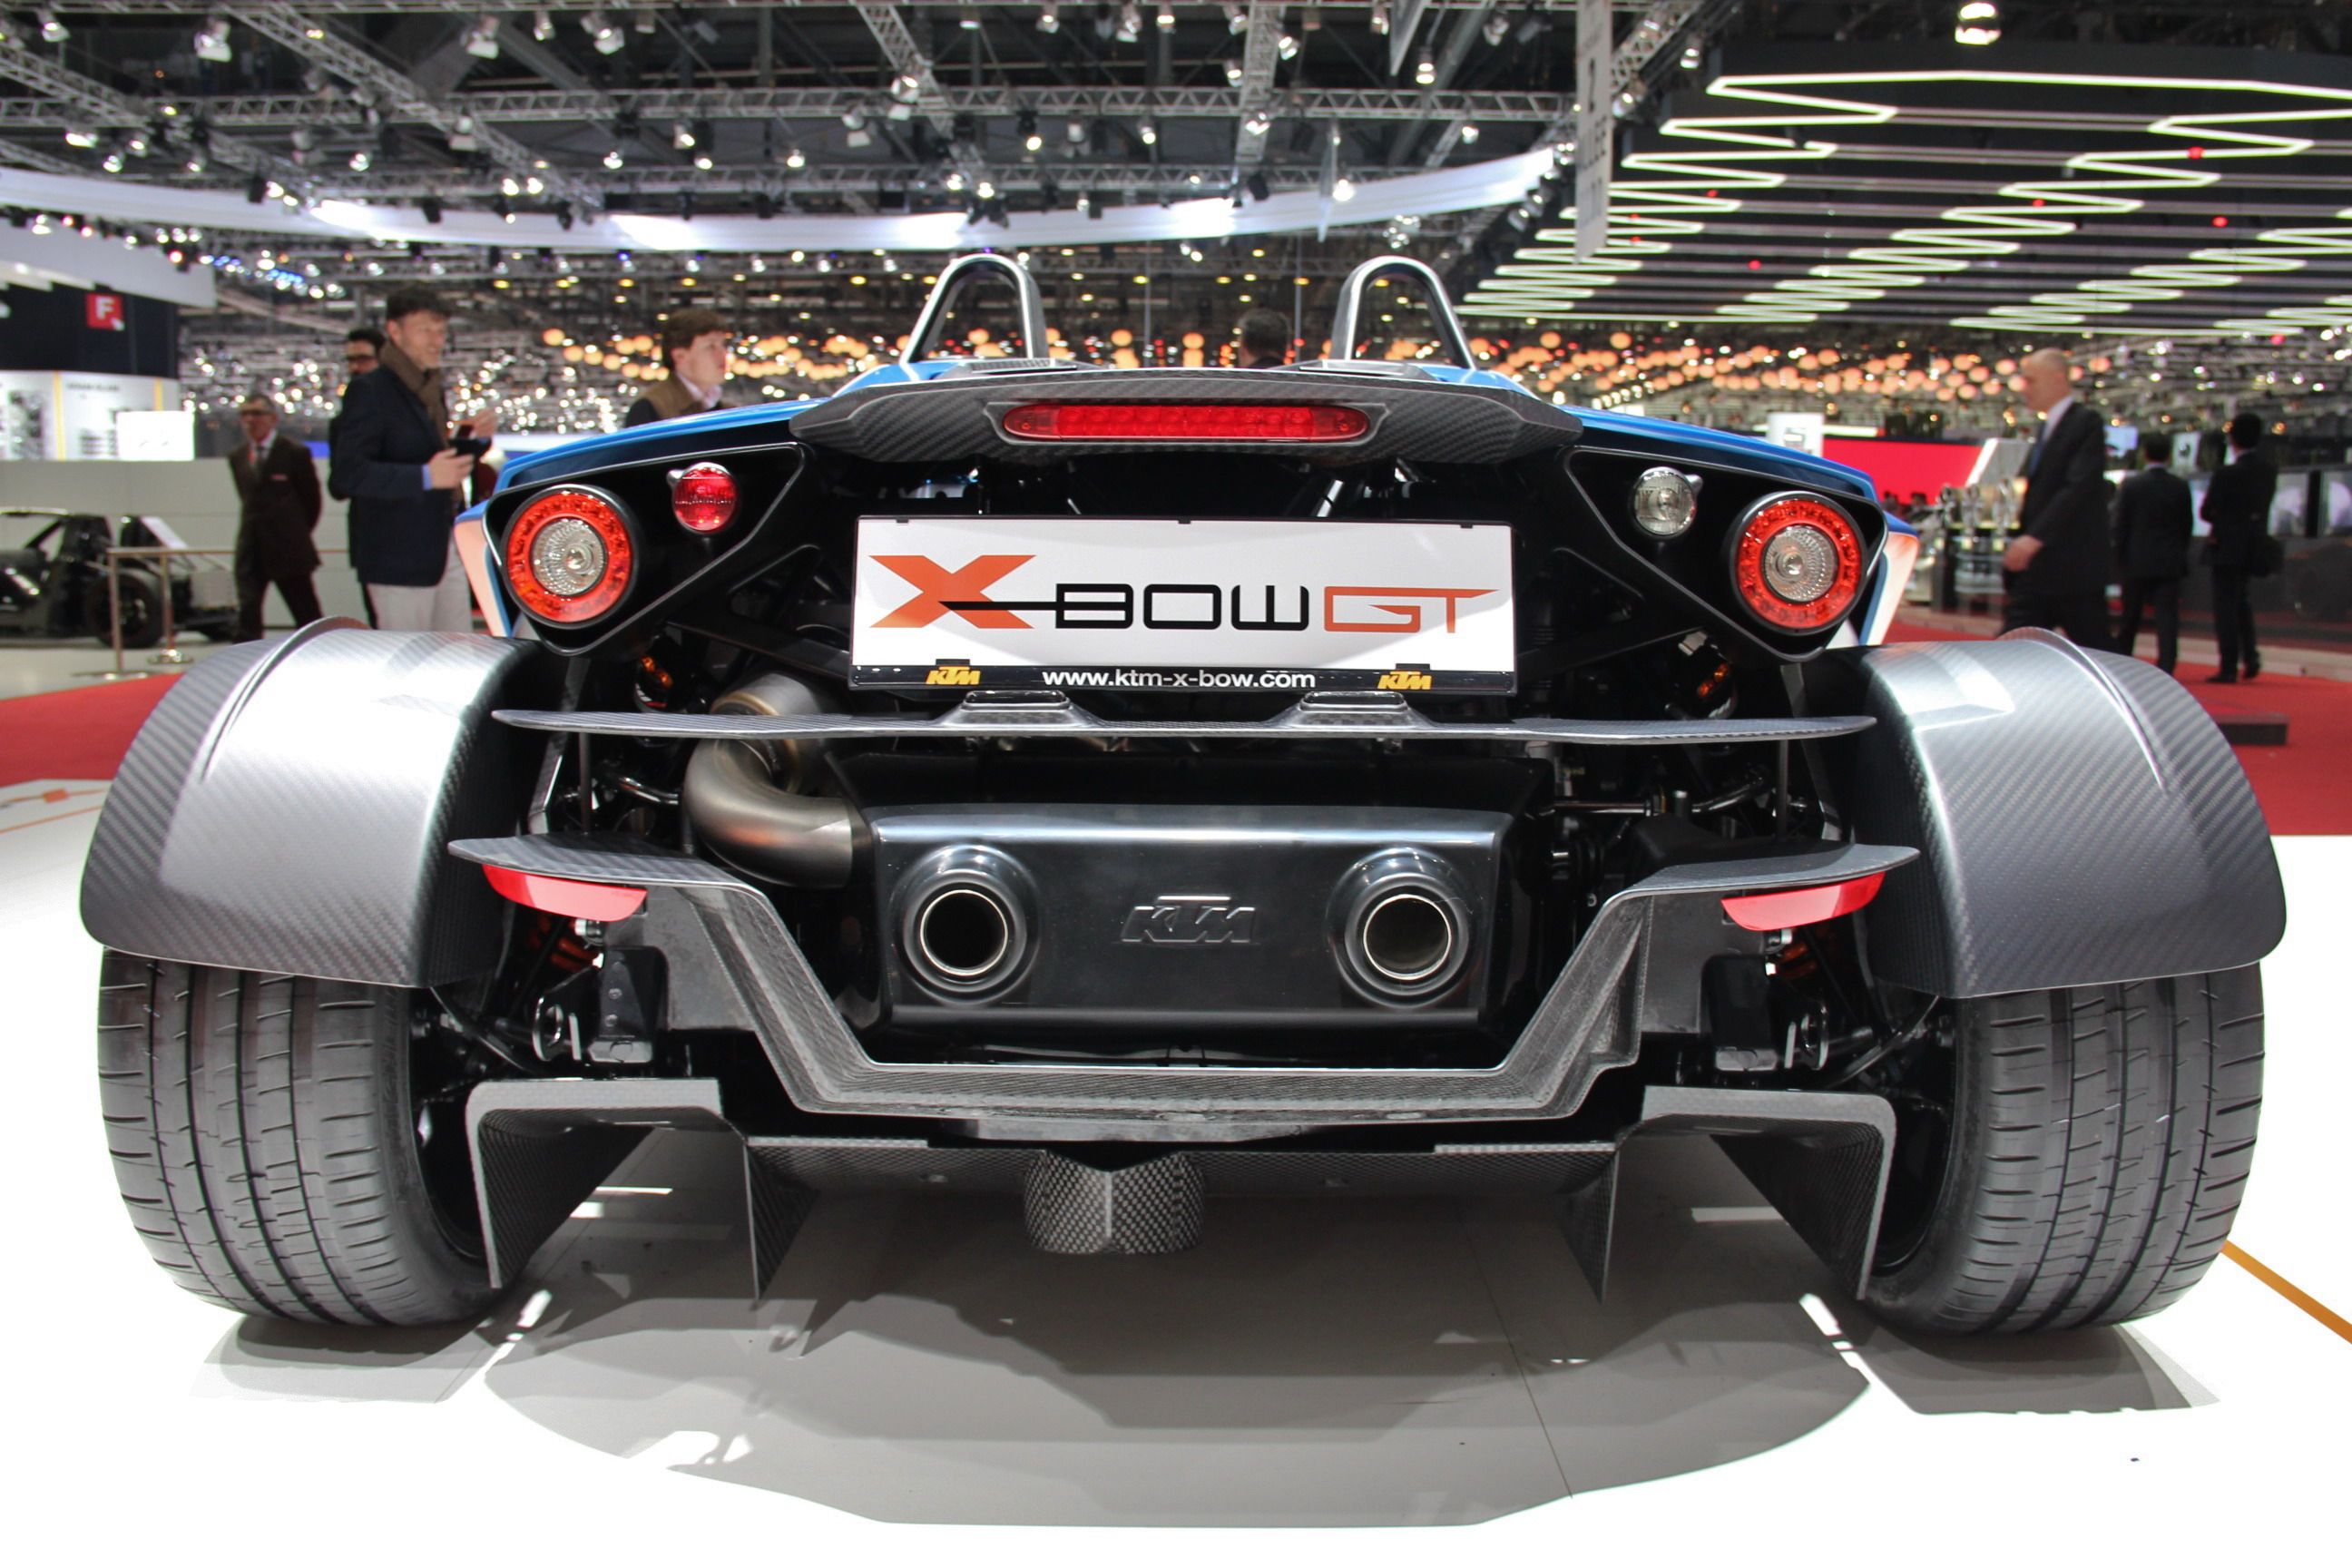 2014 KTM X-Bow GT